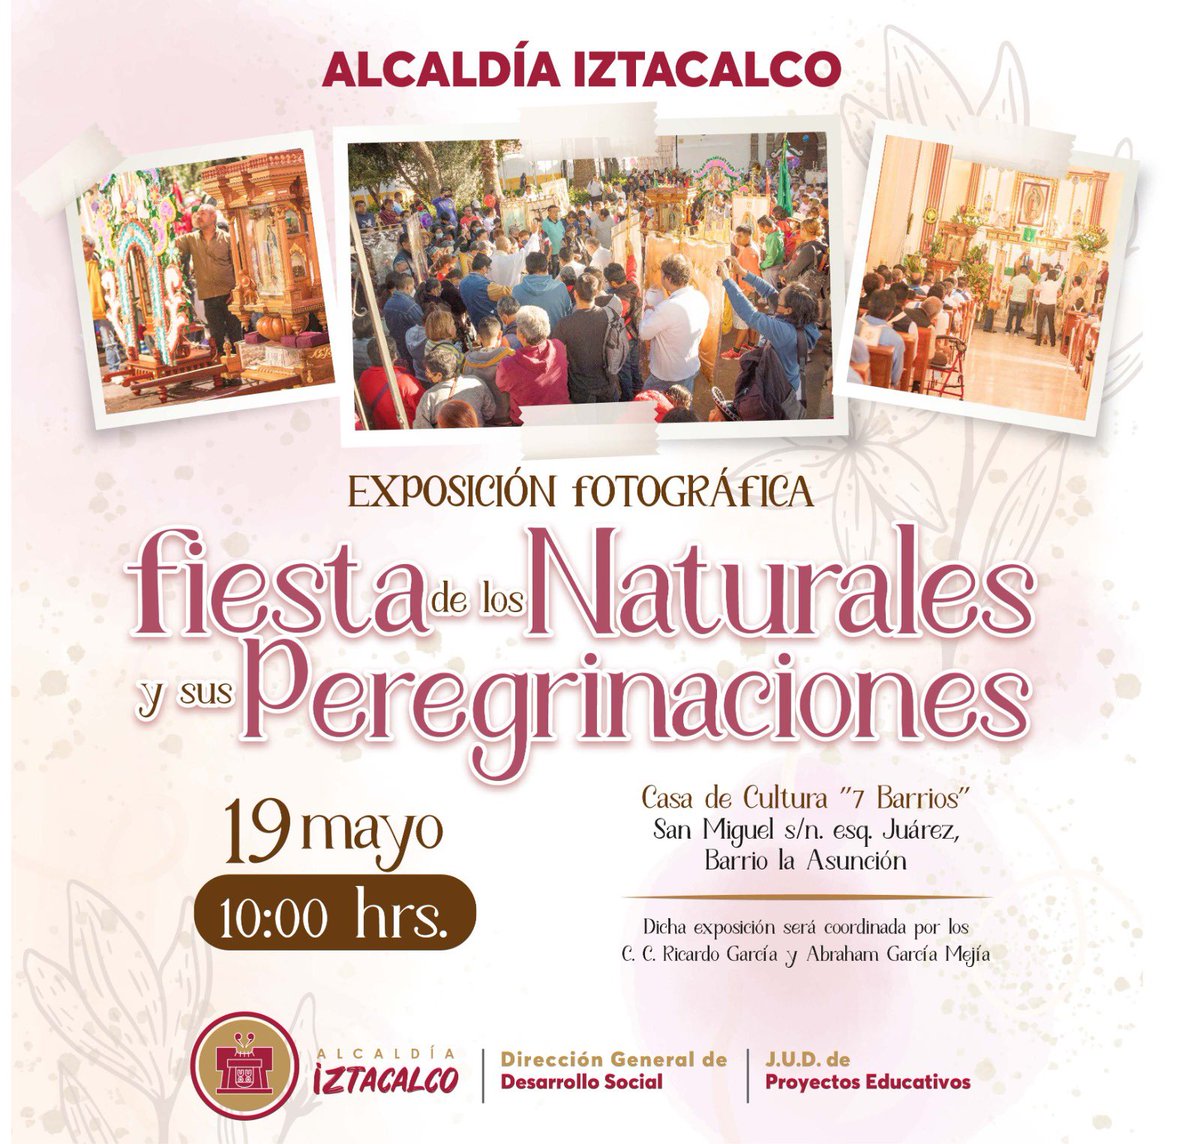 Te esperamos en la Exposición fotográfica “Fiesta de los Naturales y sus peregrinaciones” 🗓️19 de mayo 🕣10:00 hrs 📍Casa de Cultura 7 Barrios